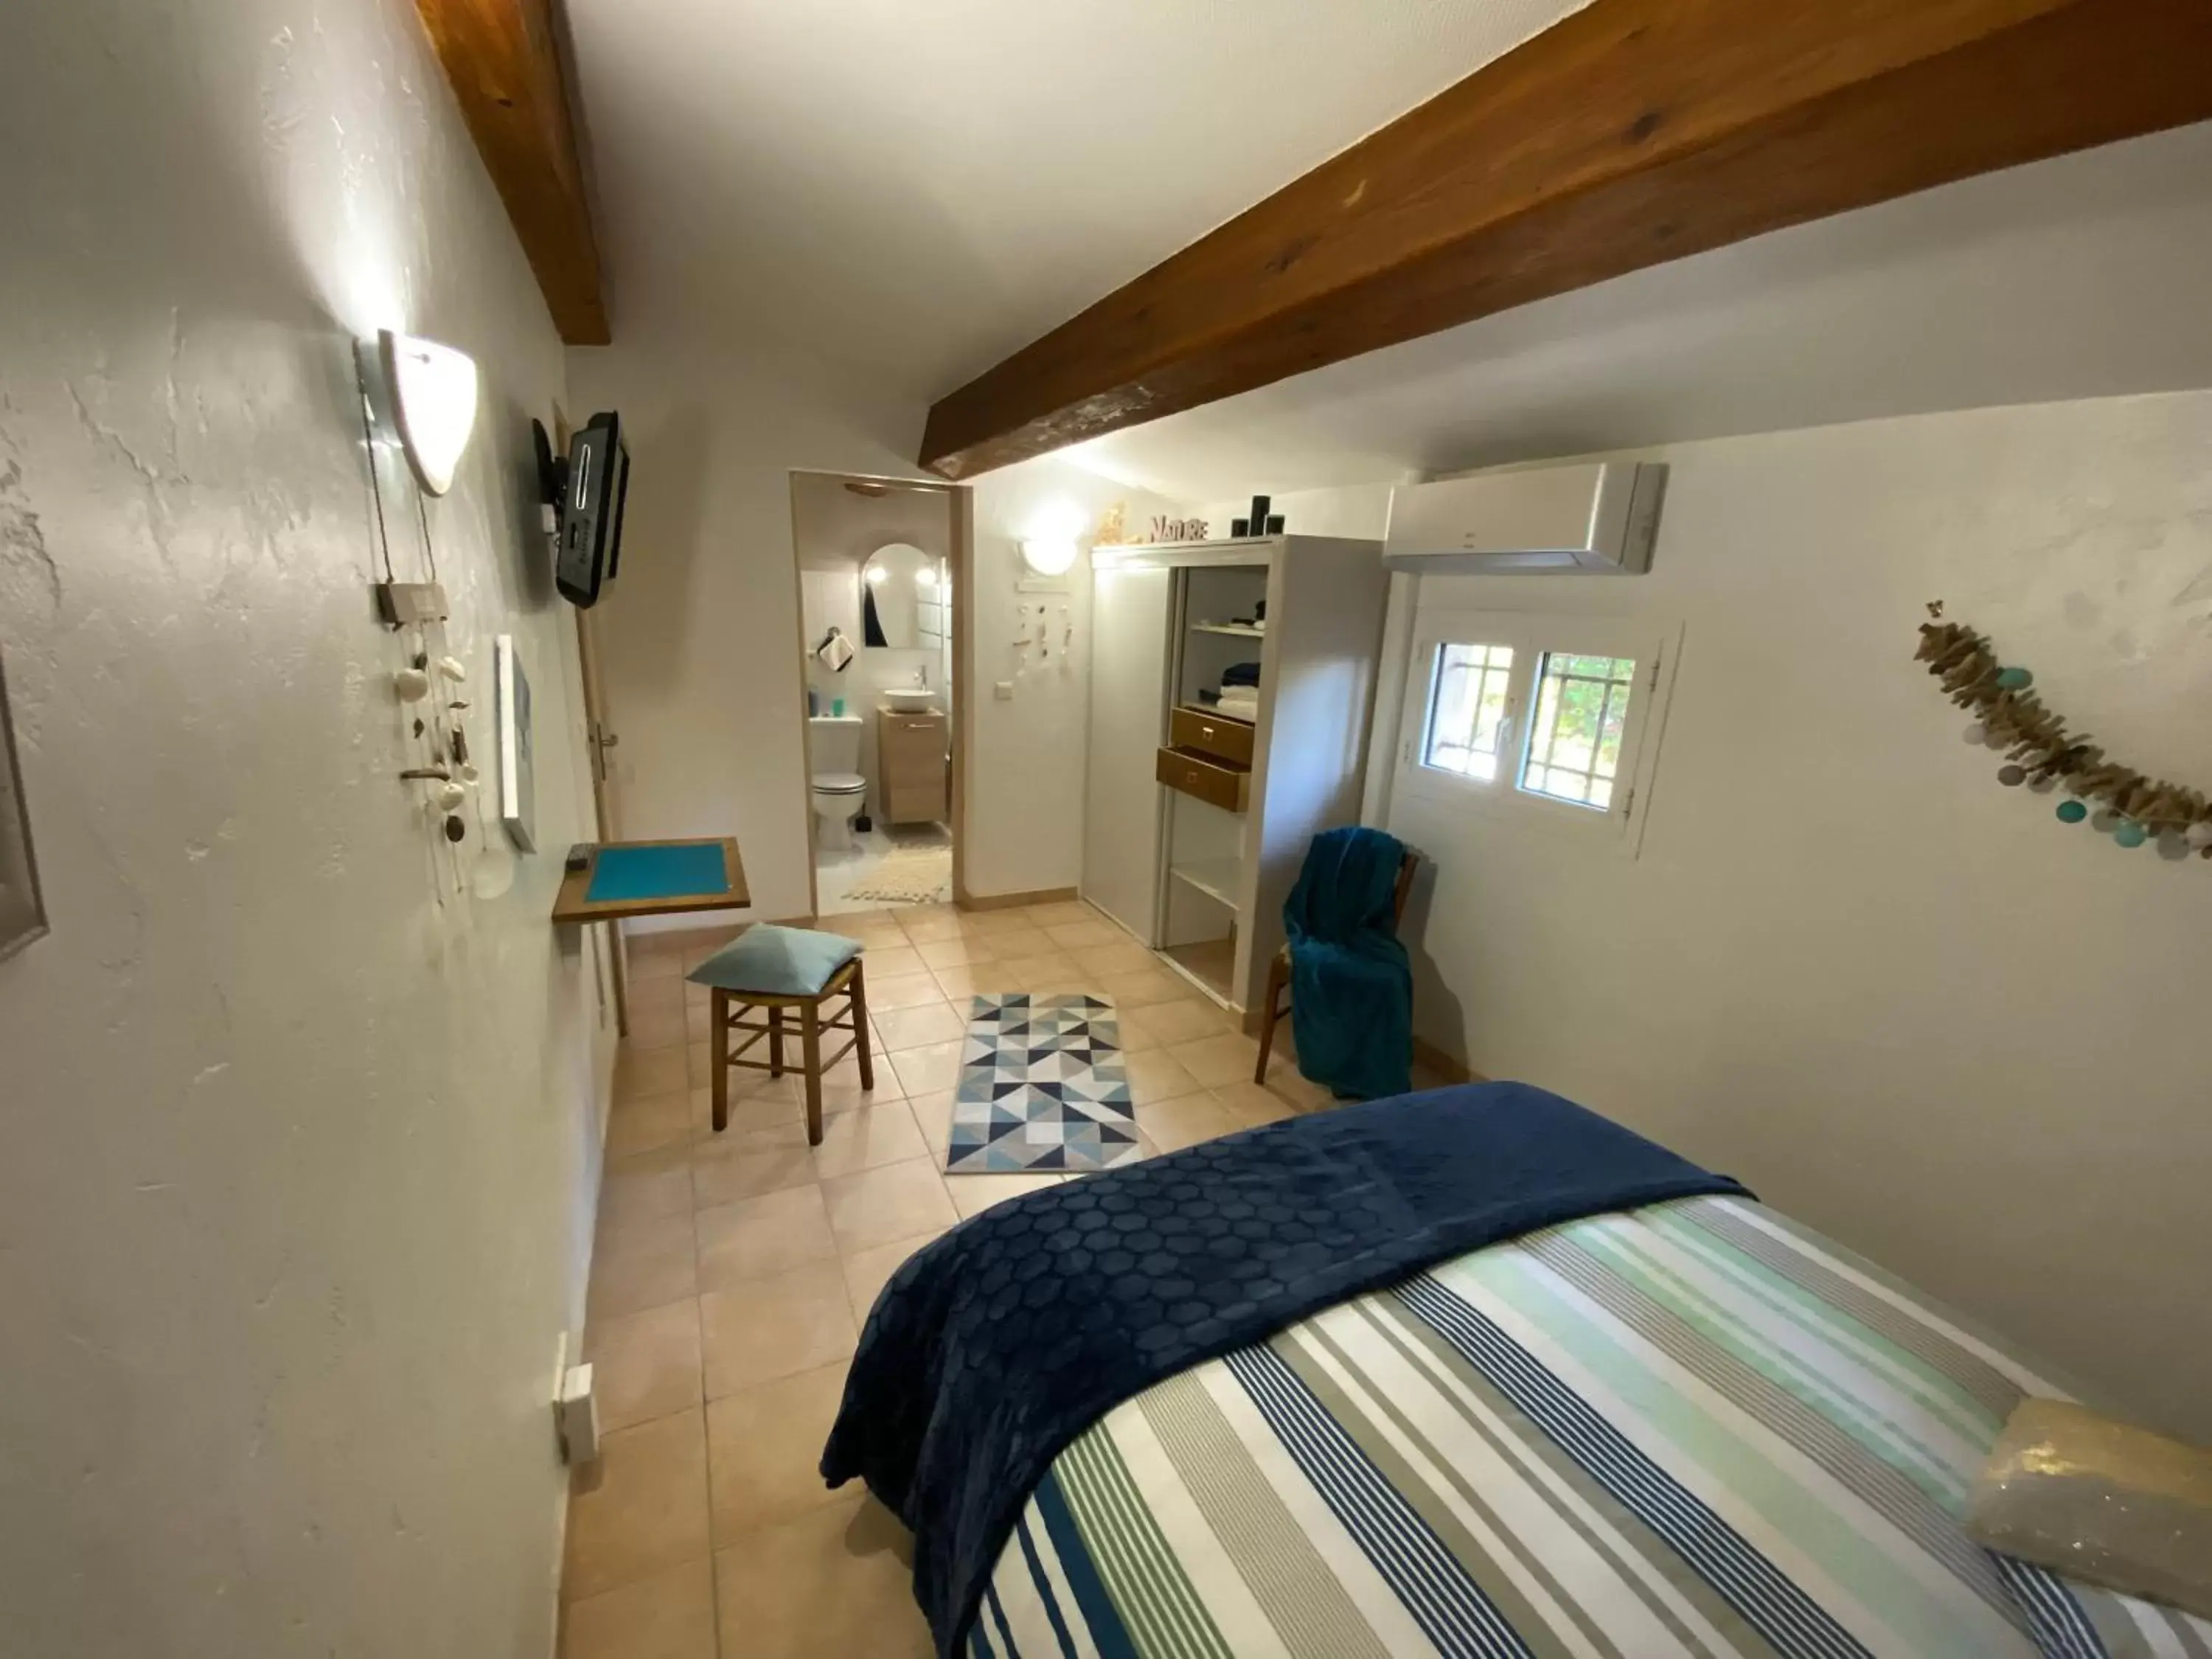 Bedroom in villa santa rita